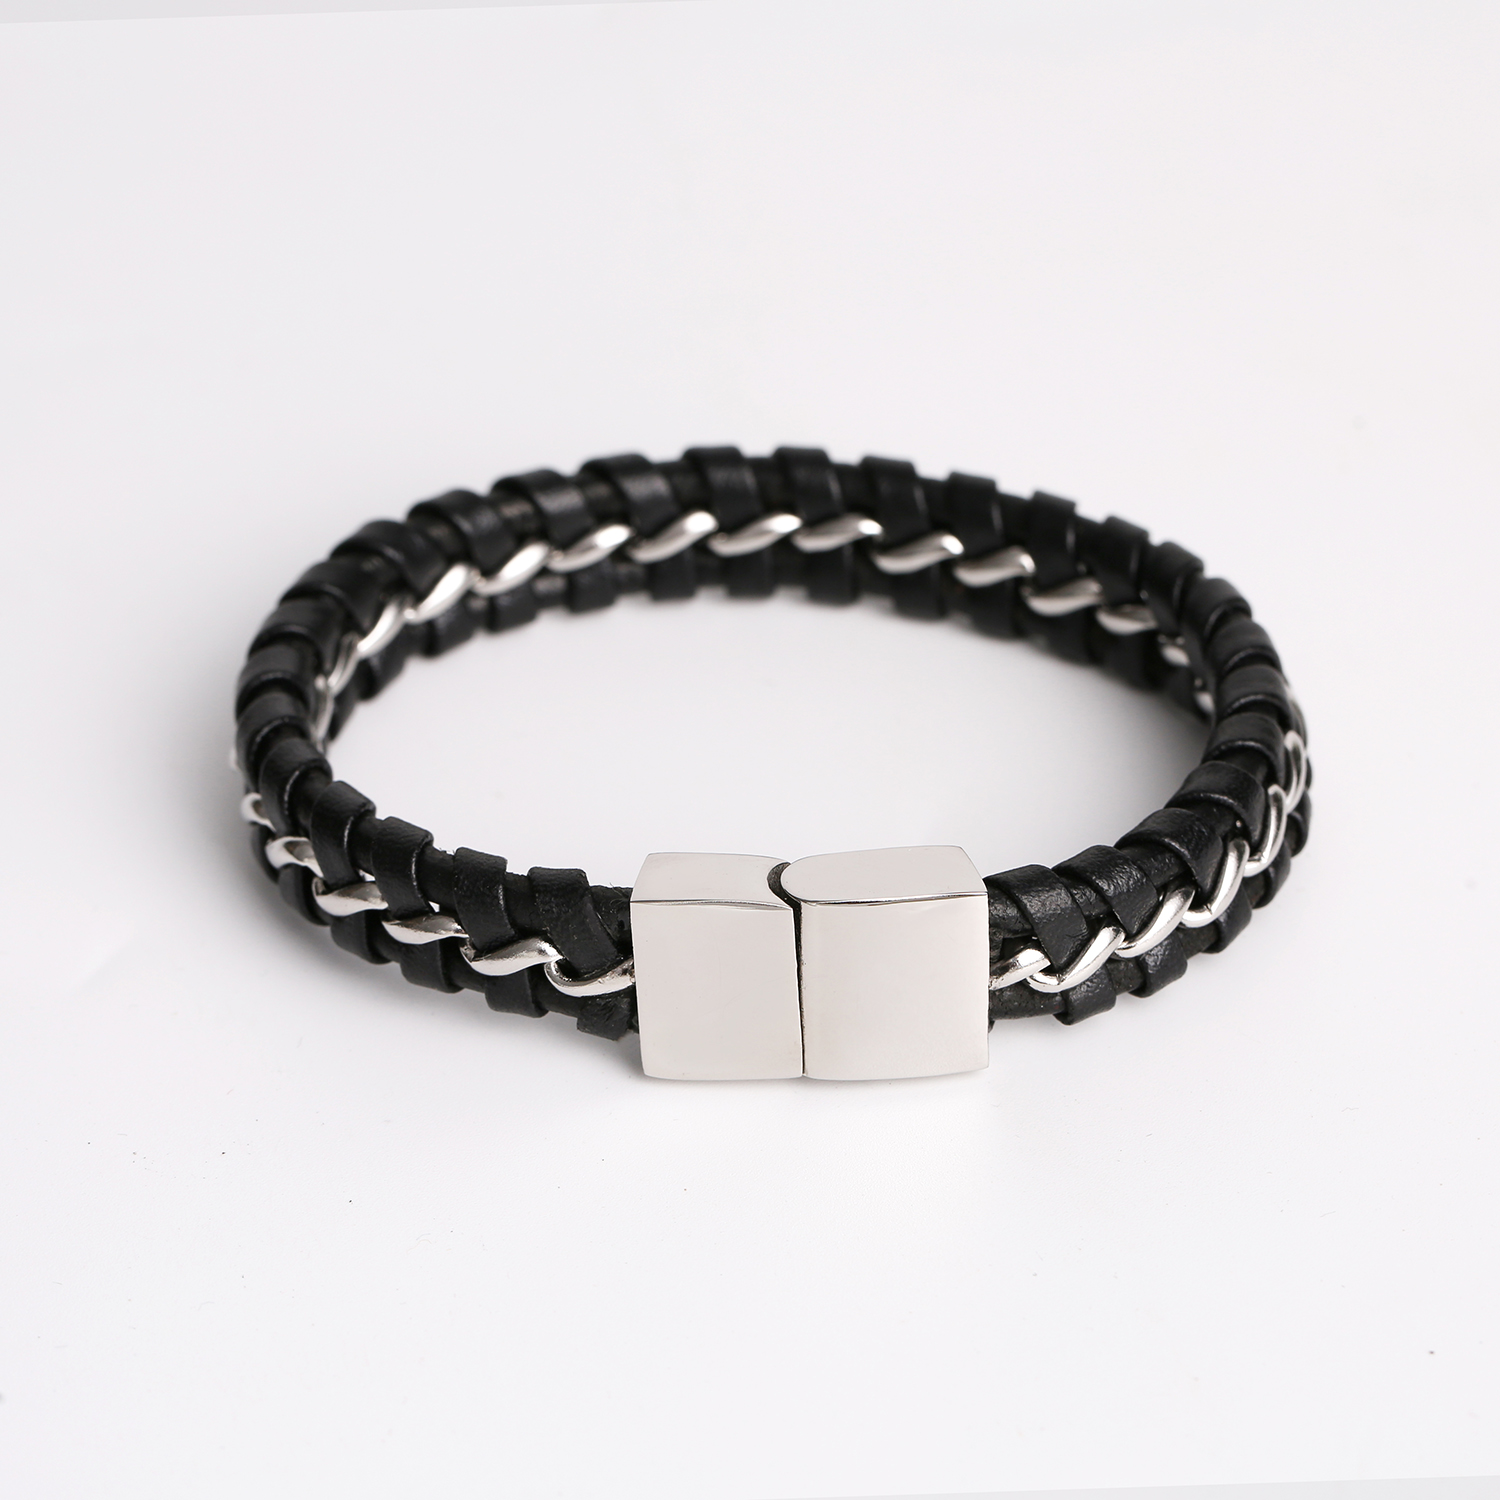 Bracelet Megnet avec chaîne en cuir personnalisée populaire, fermoir en acier inoxydable tressé